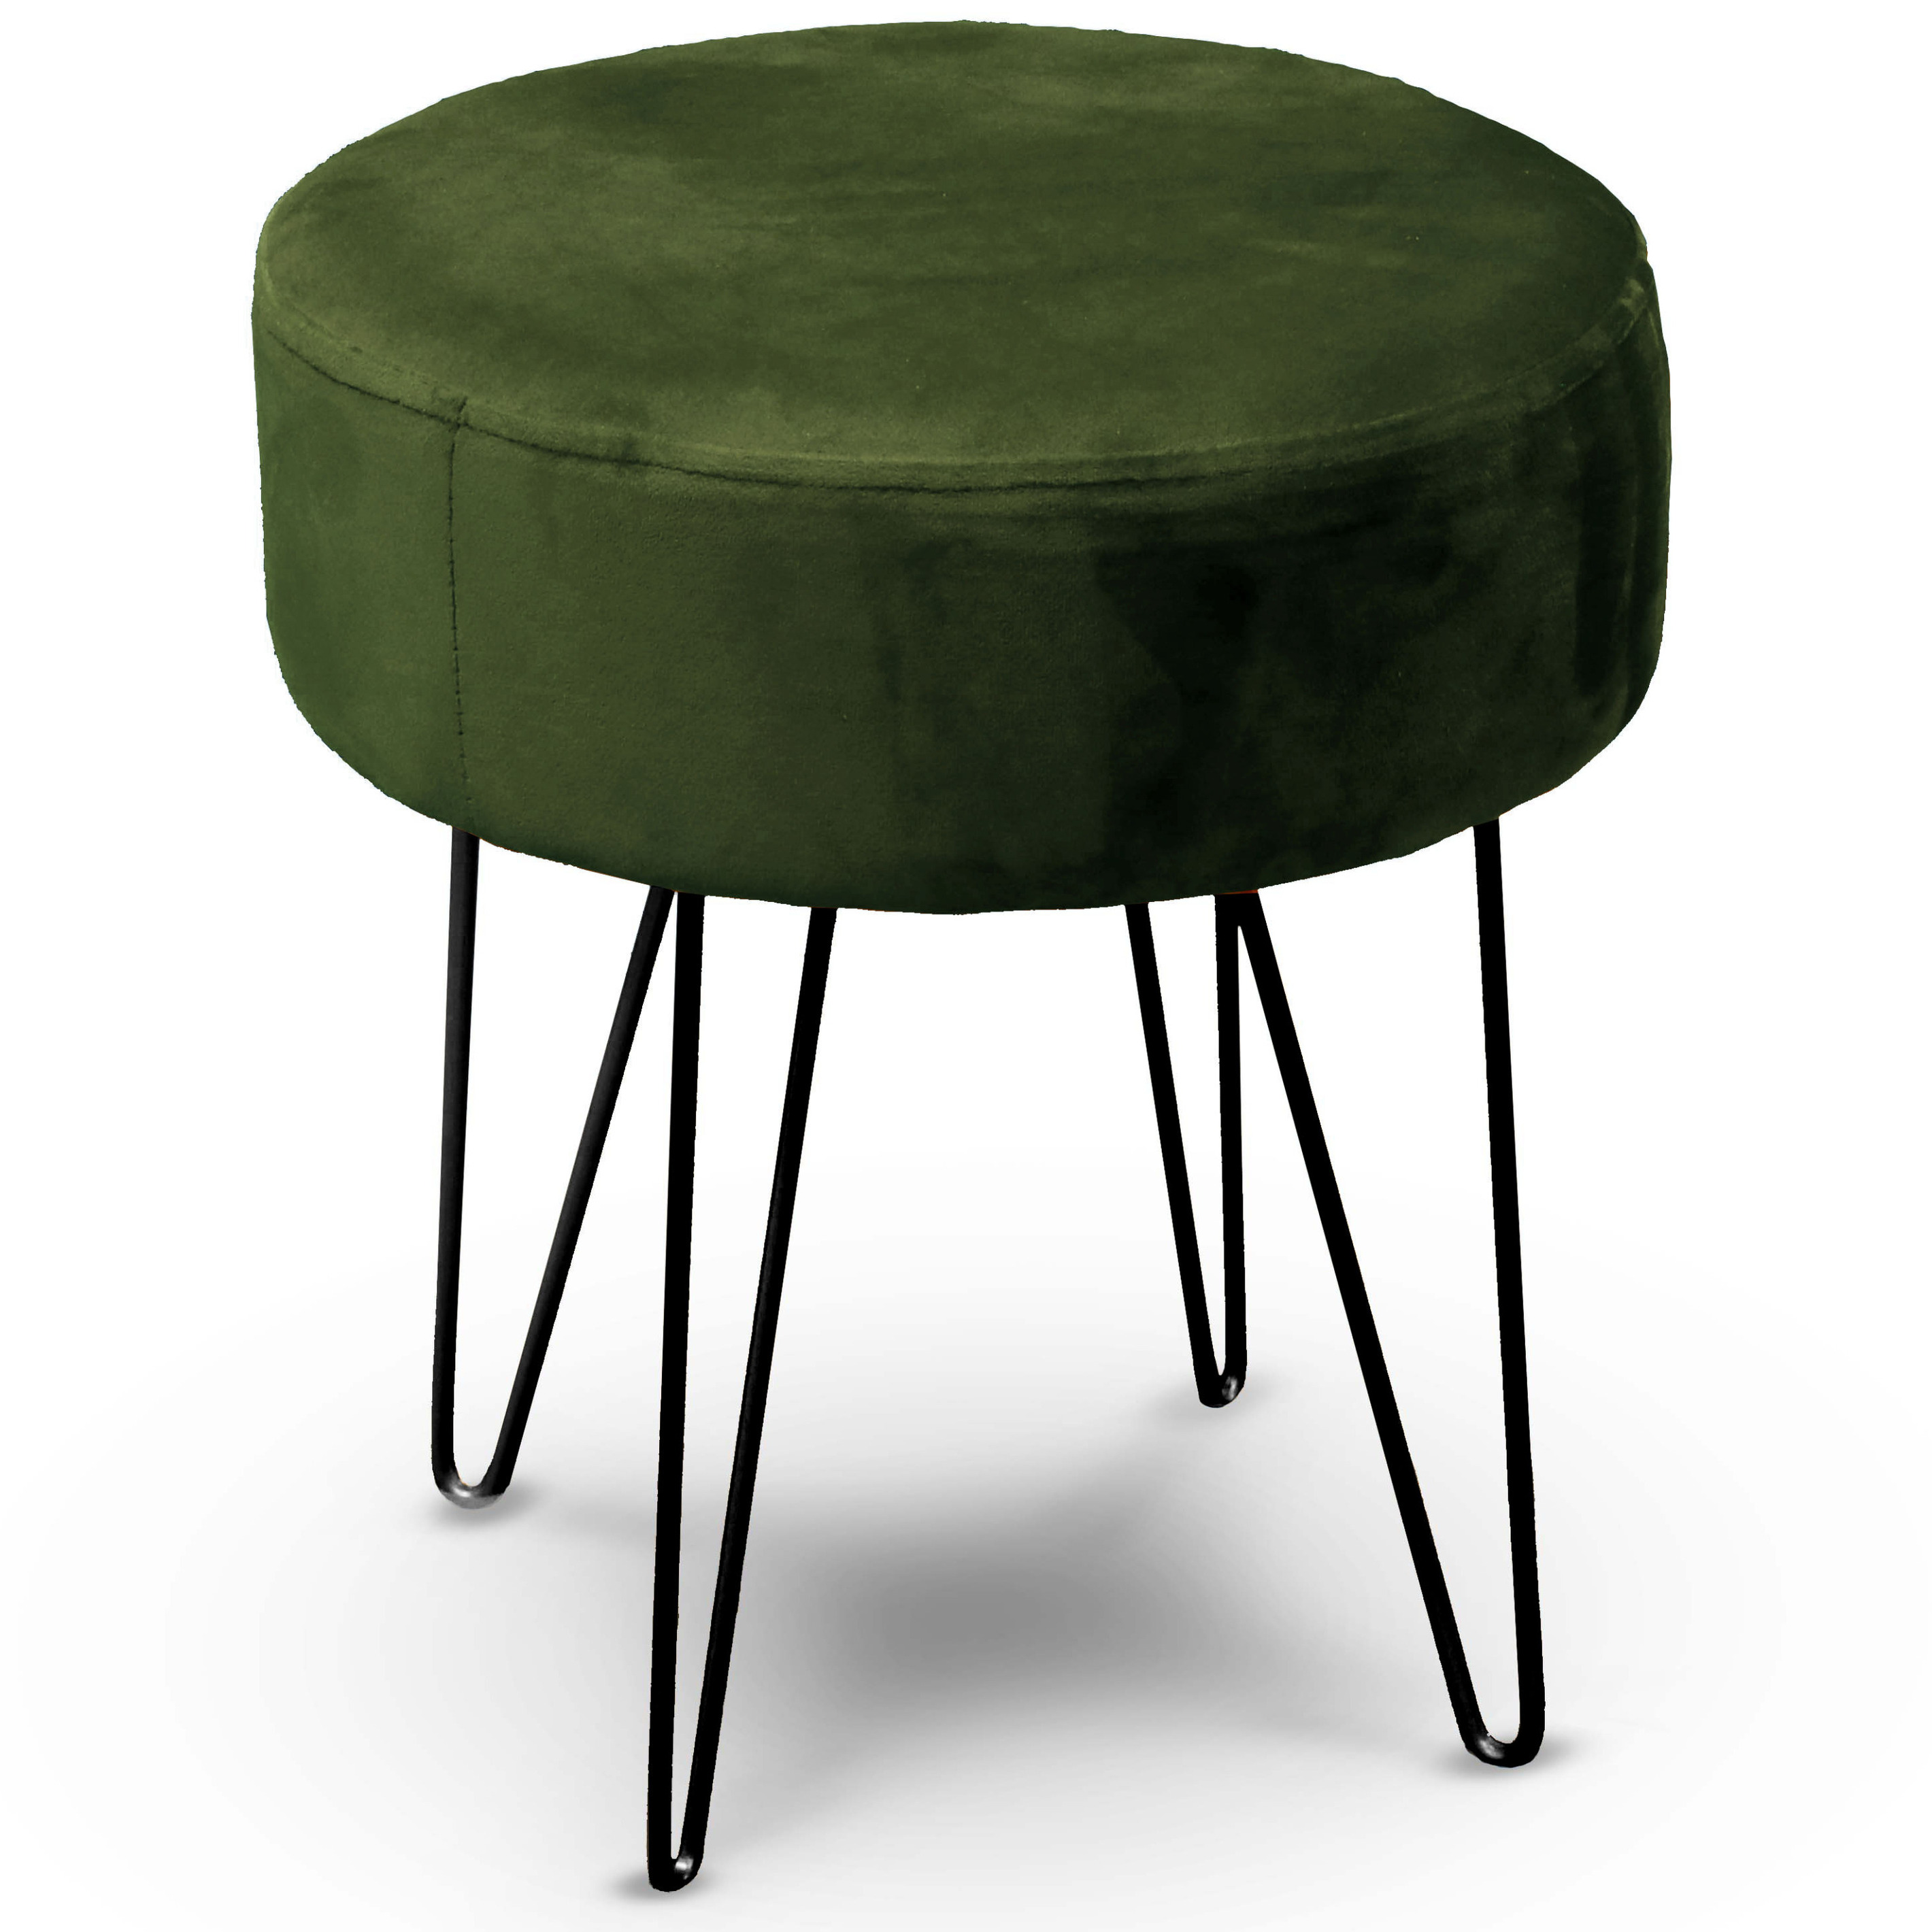 Velvet kruk Davy - groen - metaal/stof - D35 x H40 cm - bijzet stoeltjes